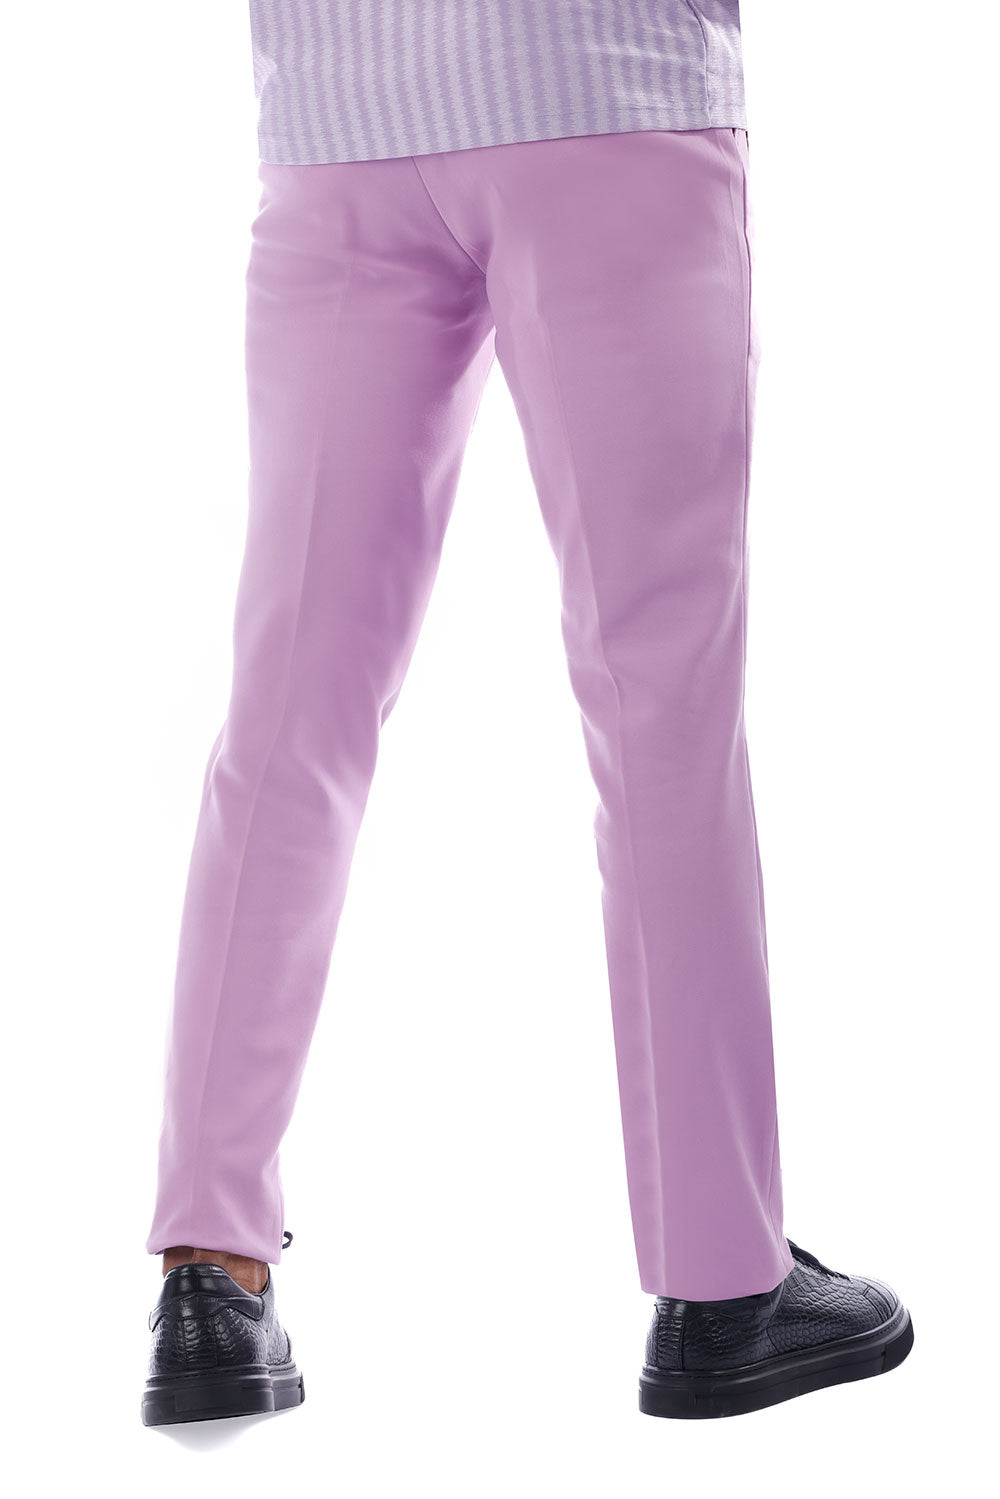 Barabas Men's Matte Solid Color Dress Pants 2CPR6 Purple